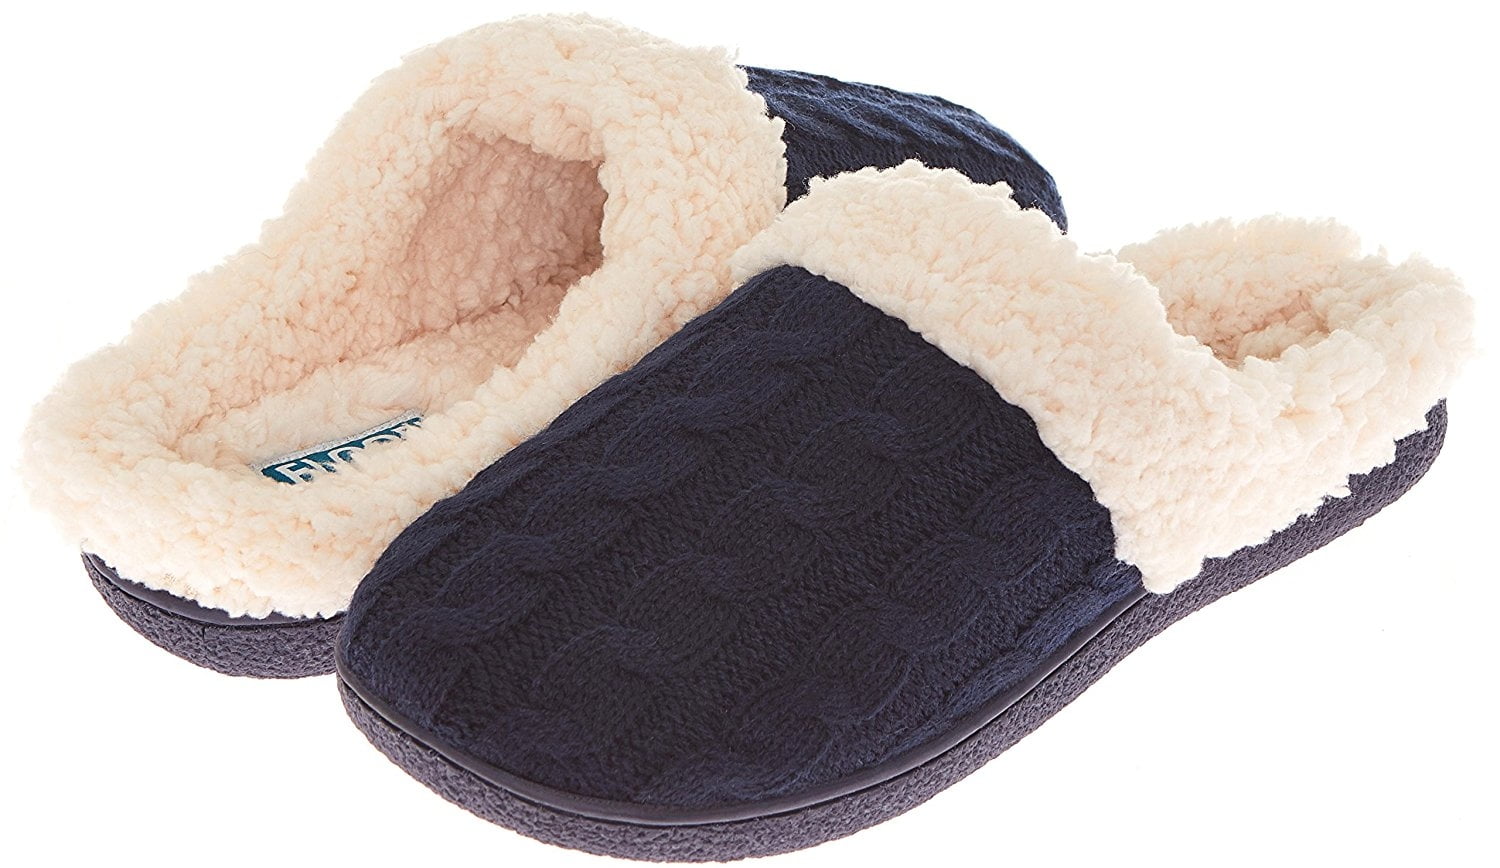 floopi womens slippers